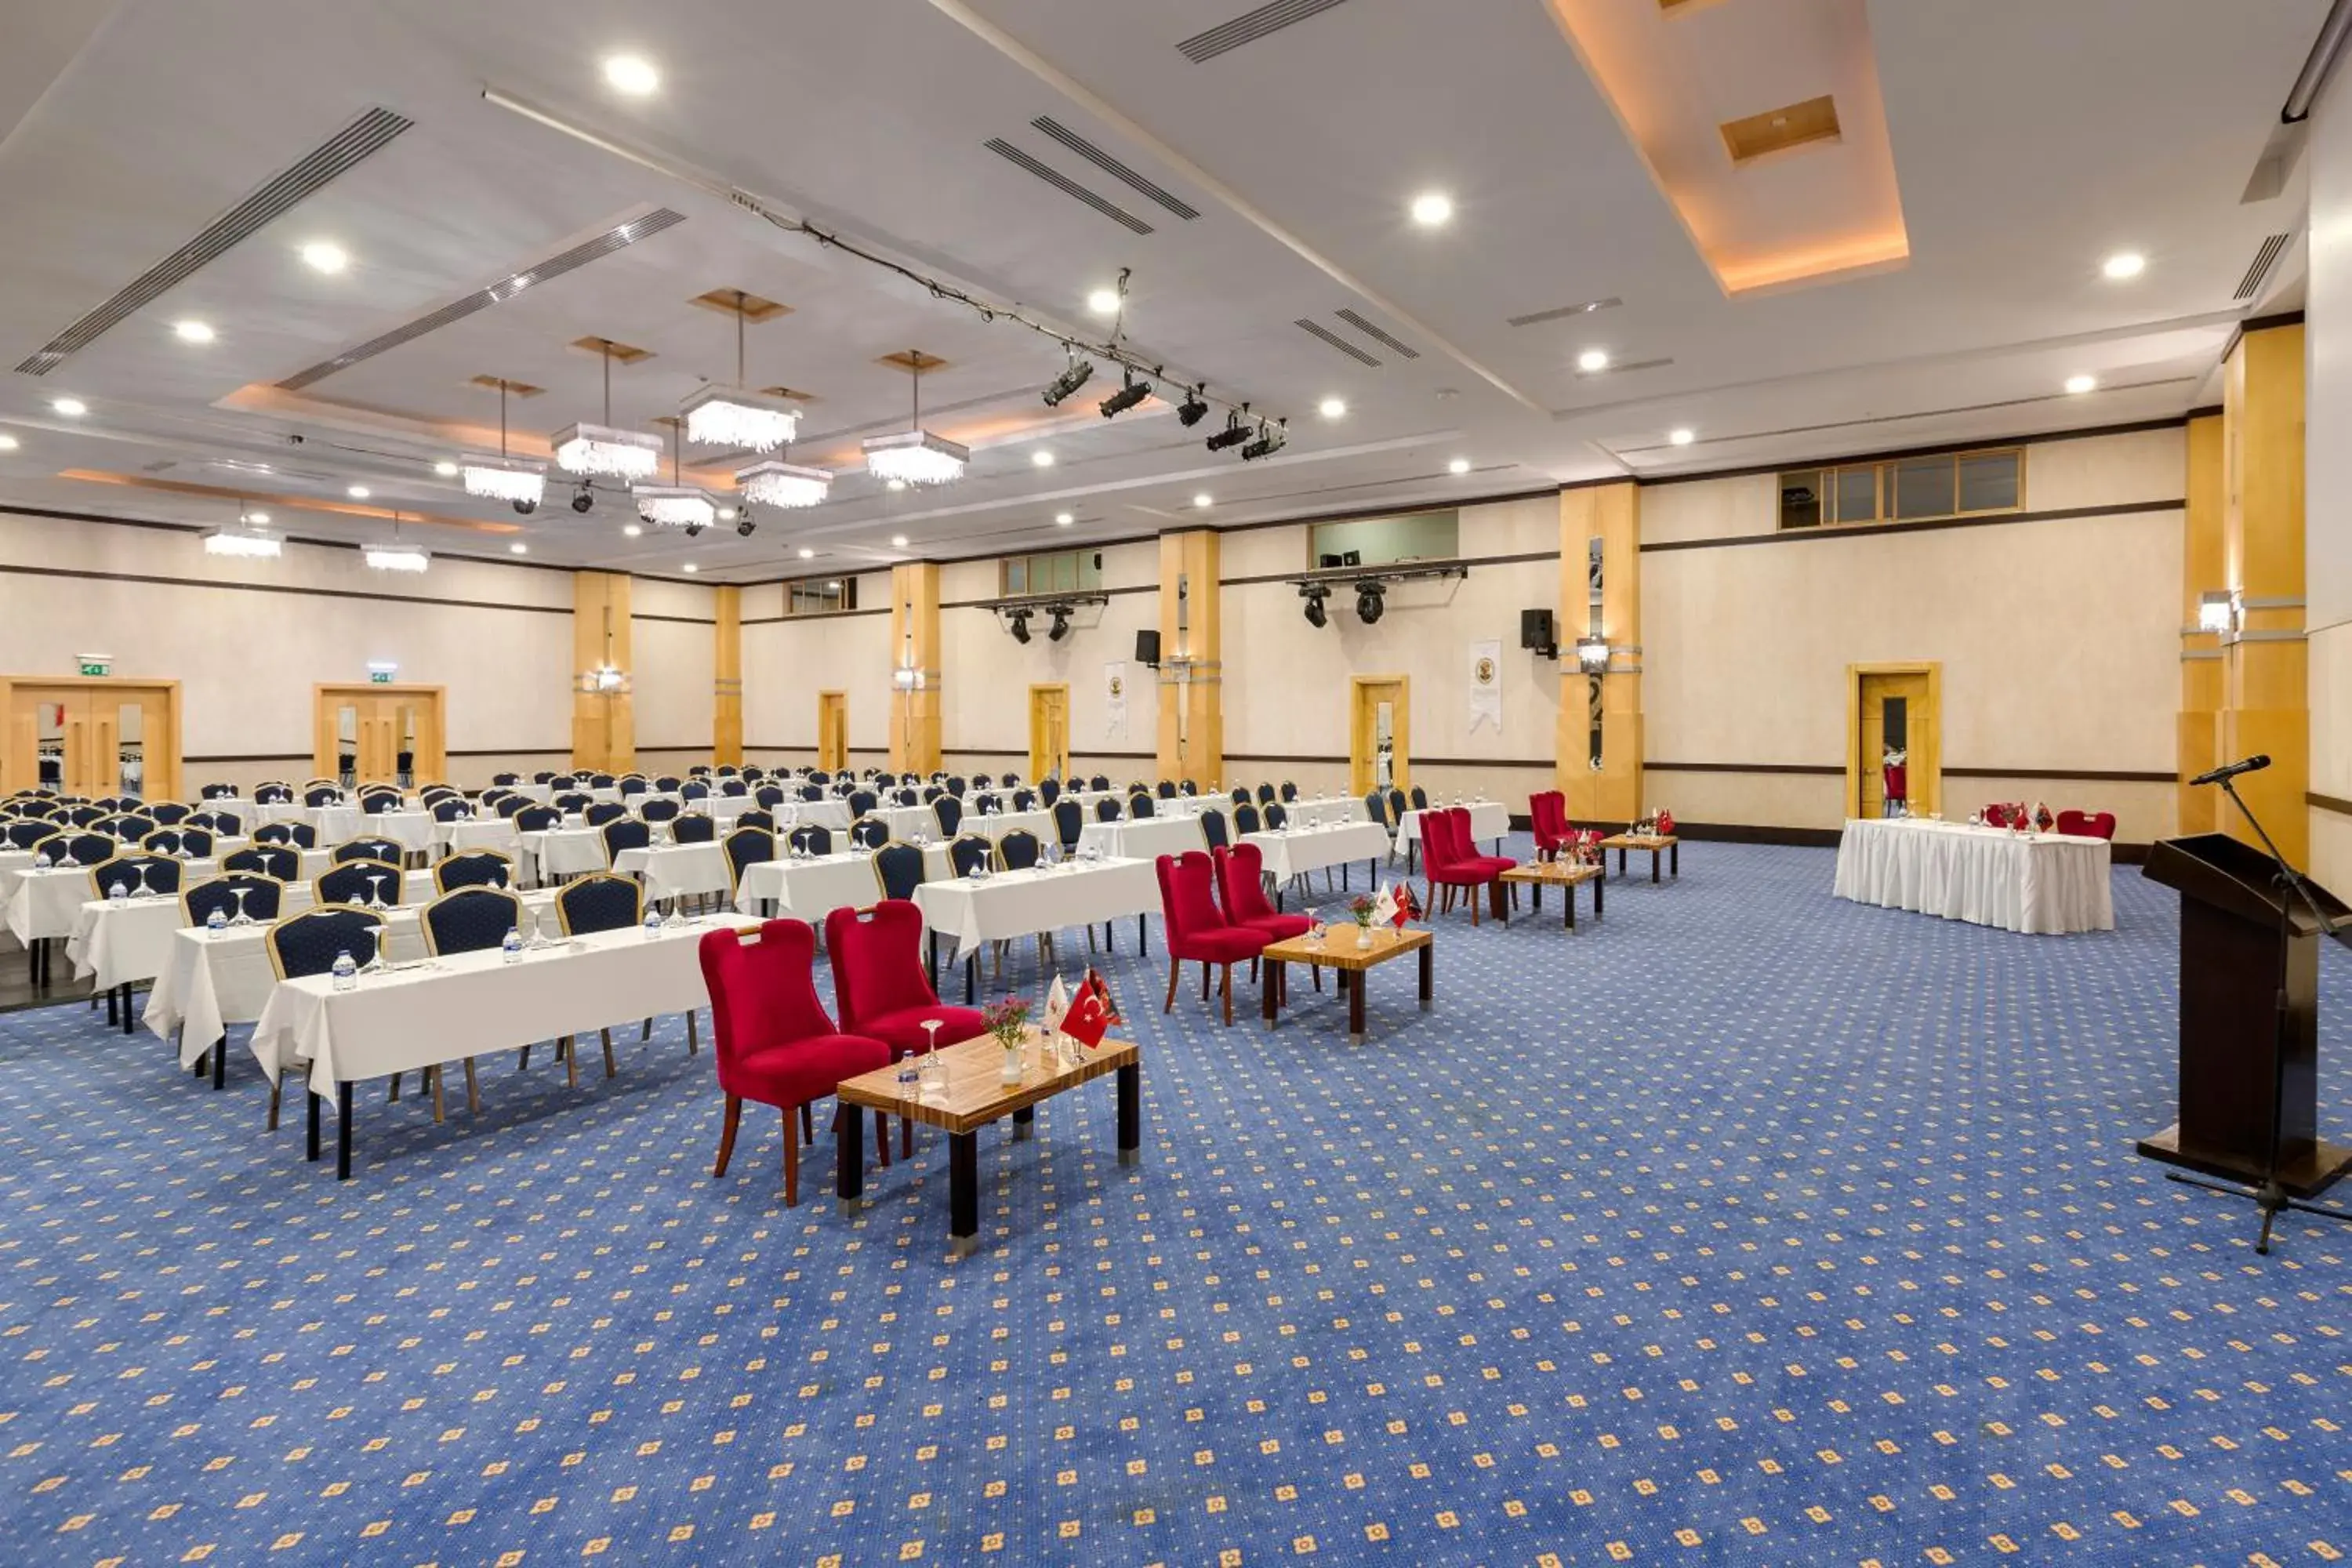 Meeting/conference room, Banquet Facilities in Alva Donna Beach Resort Comfort